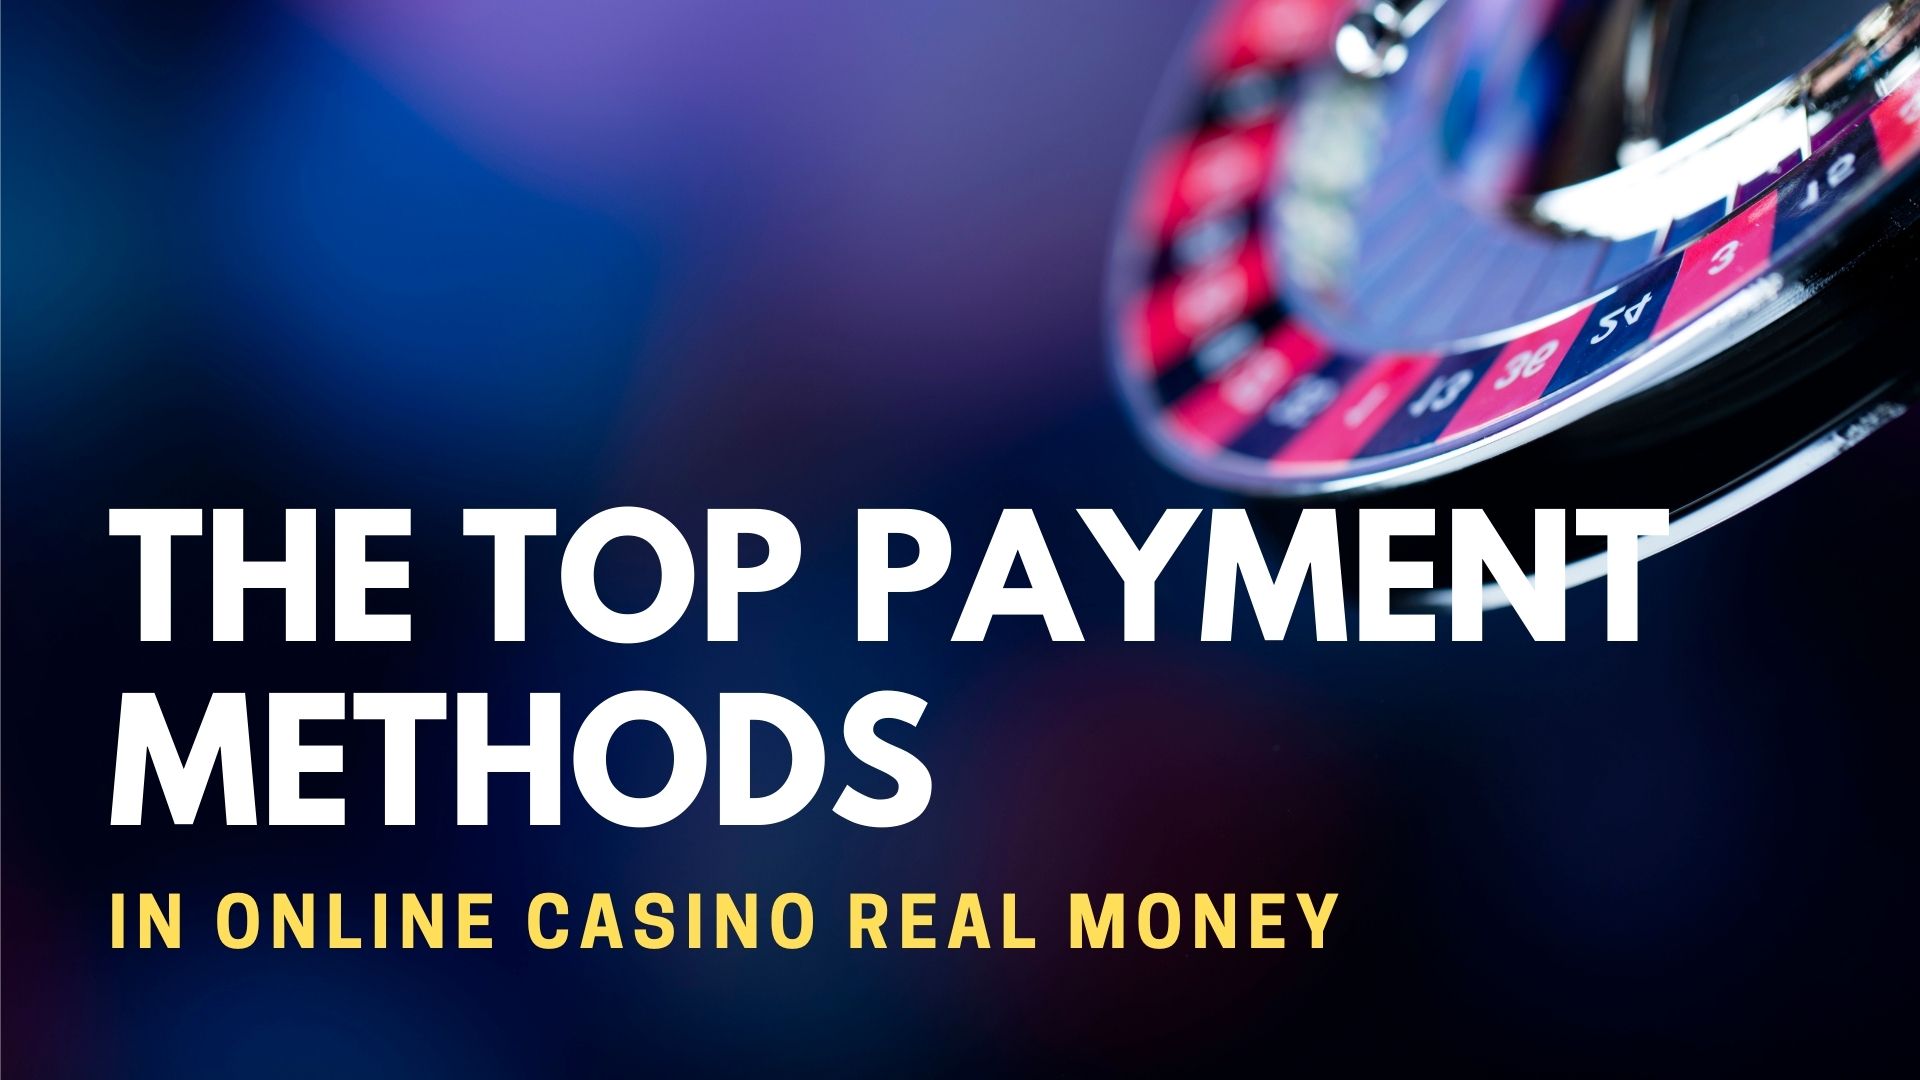 The Top Payment Methods In Online Casino Real Money